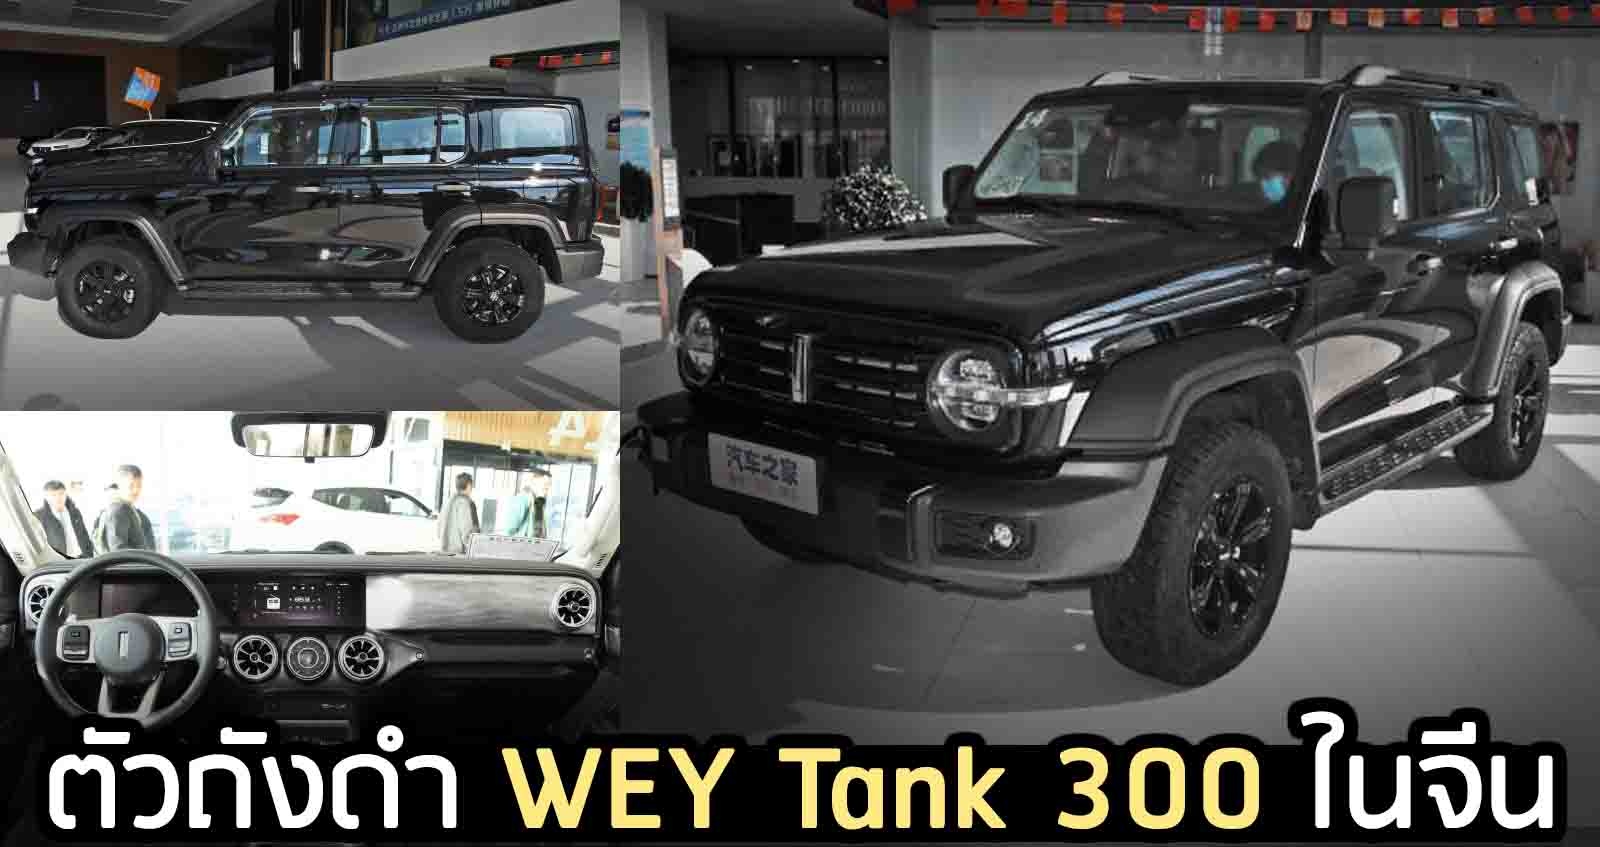 ตัวถังดำ WEY Tank 300 เริ่ม 813,000 บาท เจ้าแห่งออฟโรต ในจีน